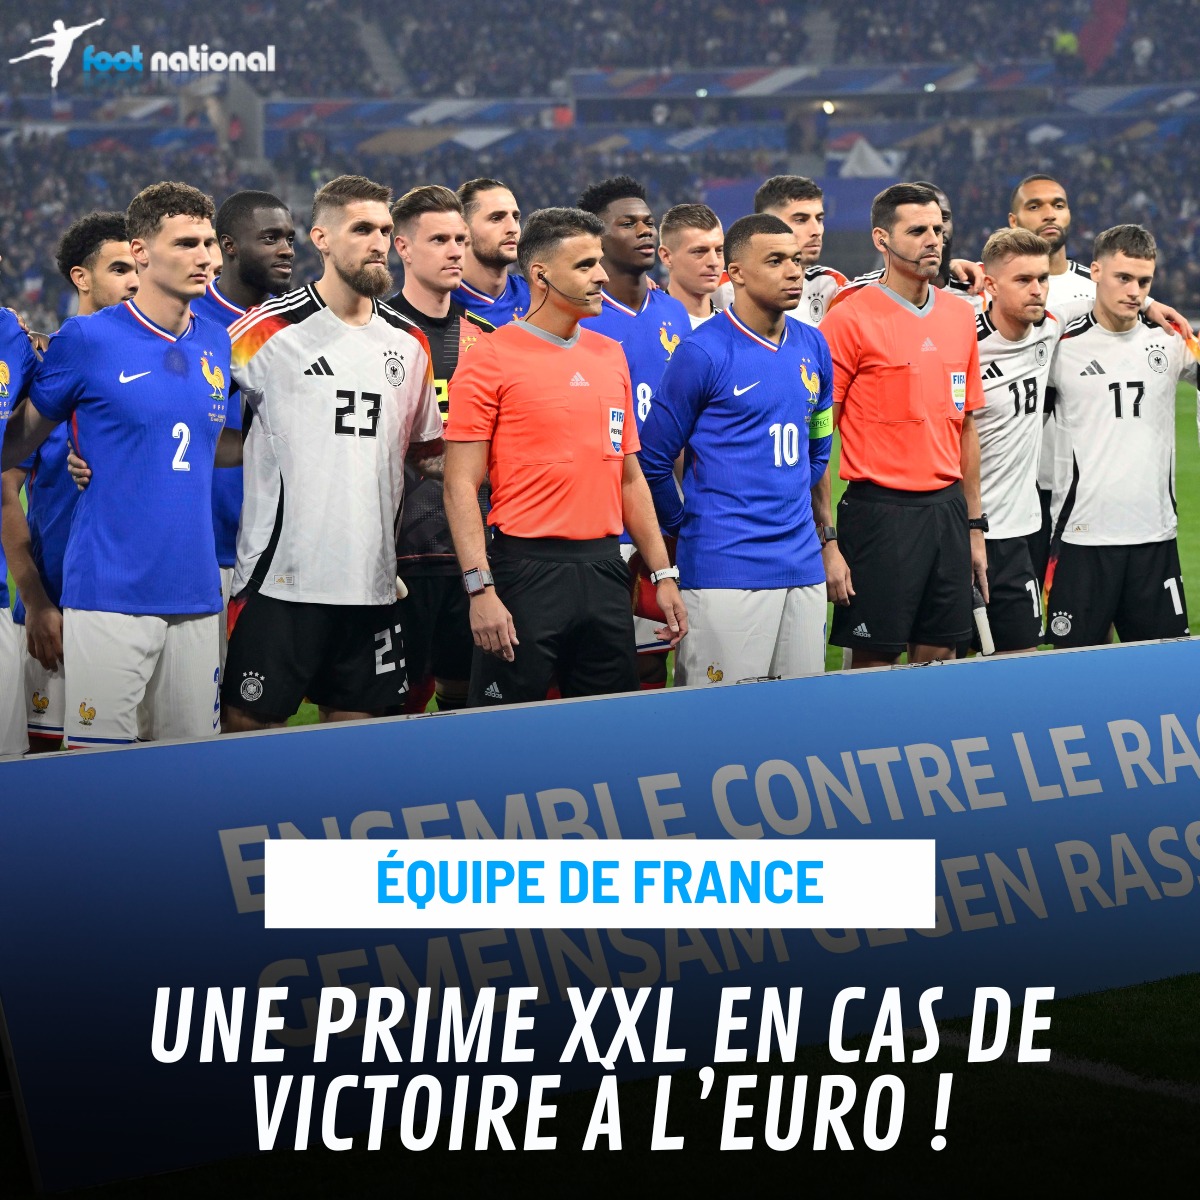 Droit à l'image, prime de victoire... les Bleus vont toucher le jackpot lors du championnat d'Europe 2024 en Allemagne (14 juin - 14 juillet) ! 🤑 👉 tinyurl.com/y52mrrtb